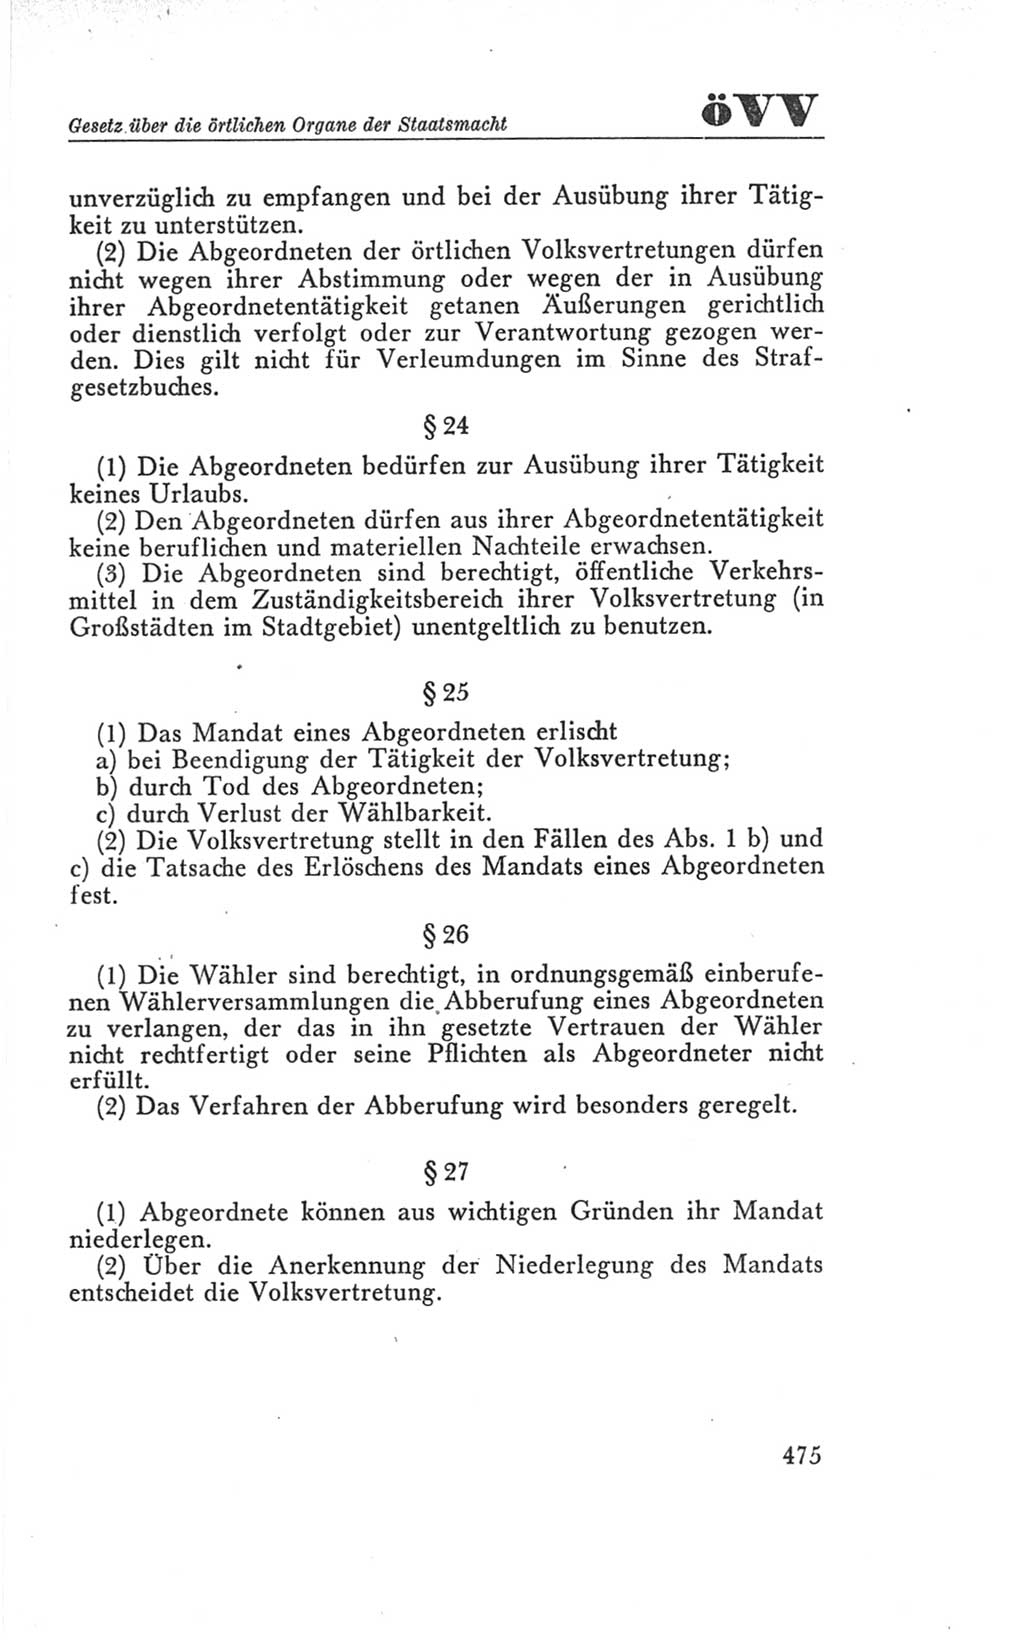 Handbuch der Volkskammer (VK) der Deutschen Demokratischen Republik (DDR), 3. Wahlperiode 1958-1963, Seite 475 (Hdb. VK. DDR 3. WP. 1958-1963, S. 475)